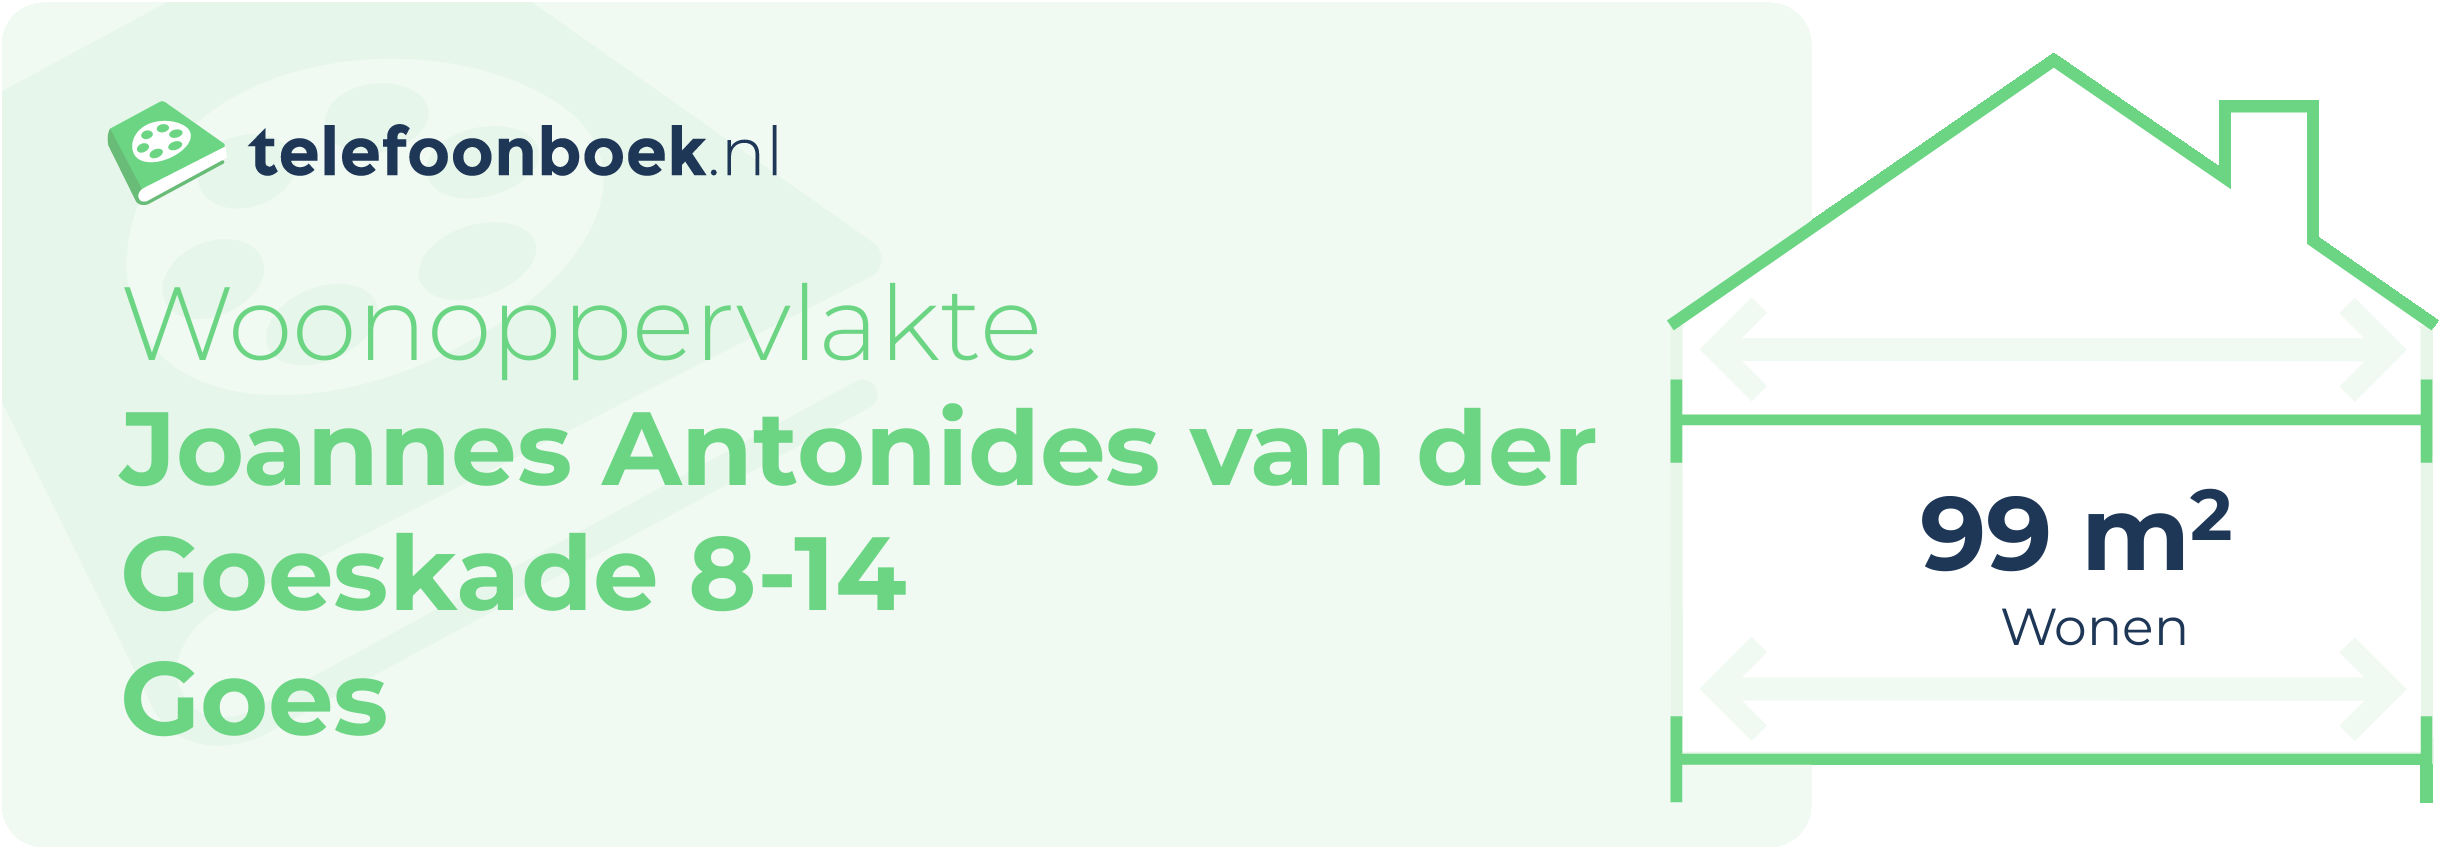 Woonoppervlakte Joannes Antonides Van Der Goeskade 8-14 Goes